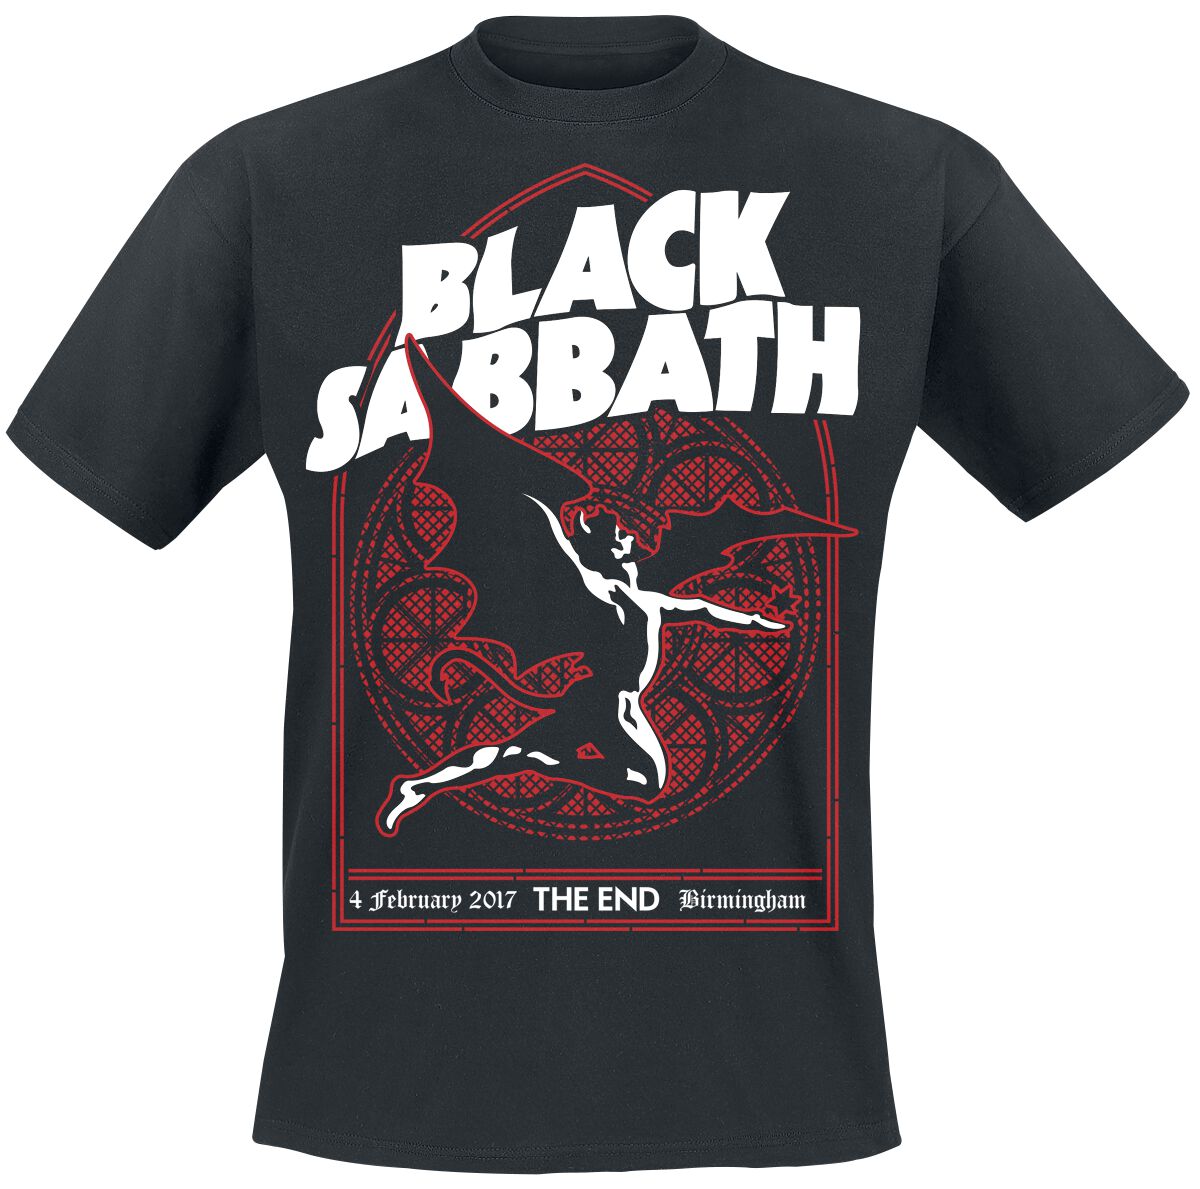 Black Sabbath T-Shirt - The End Church Window - M bis XXL - für Männer - Größe M - schwarz  - Lizenziertes Merchandise!